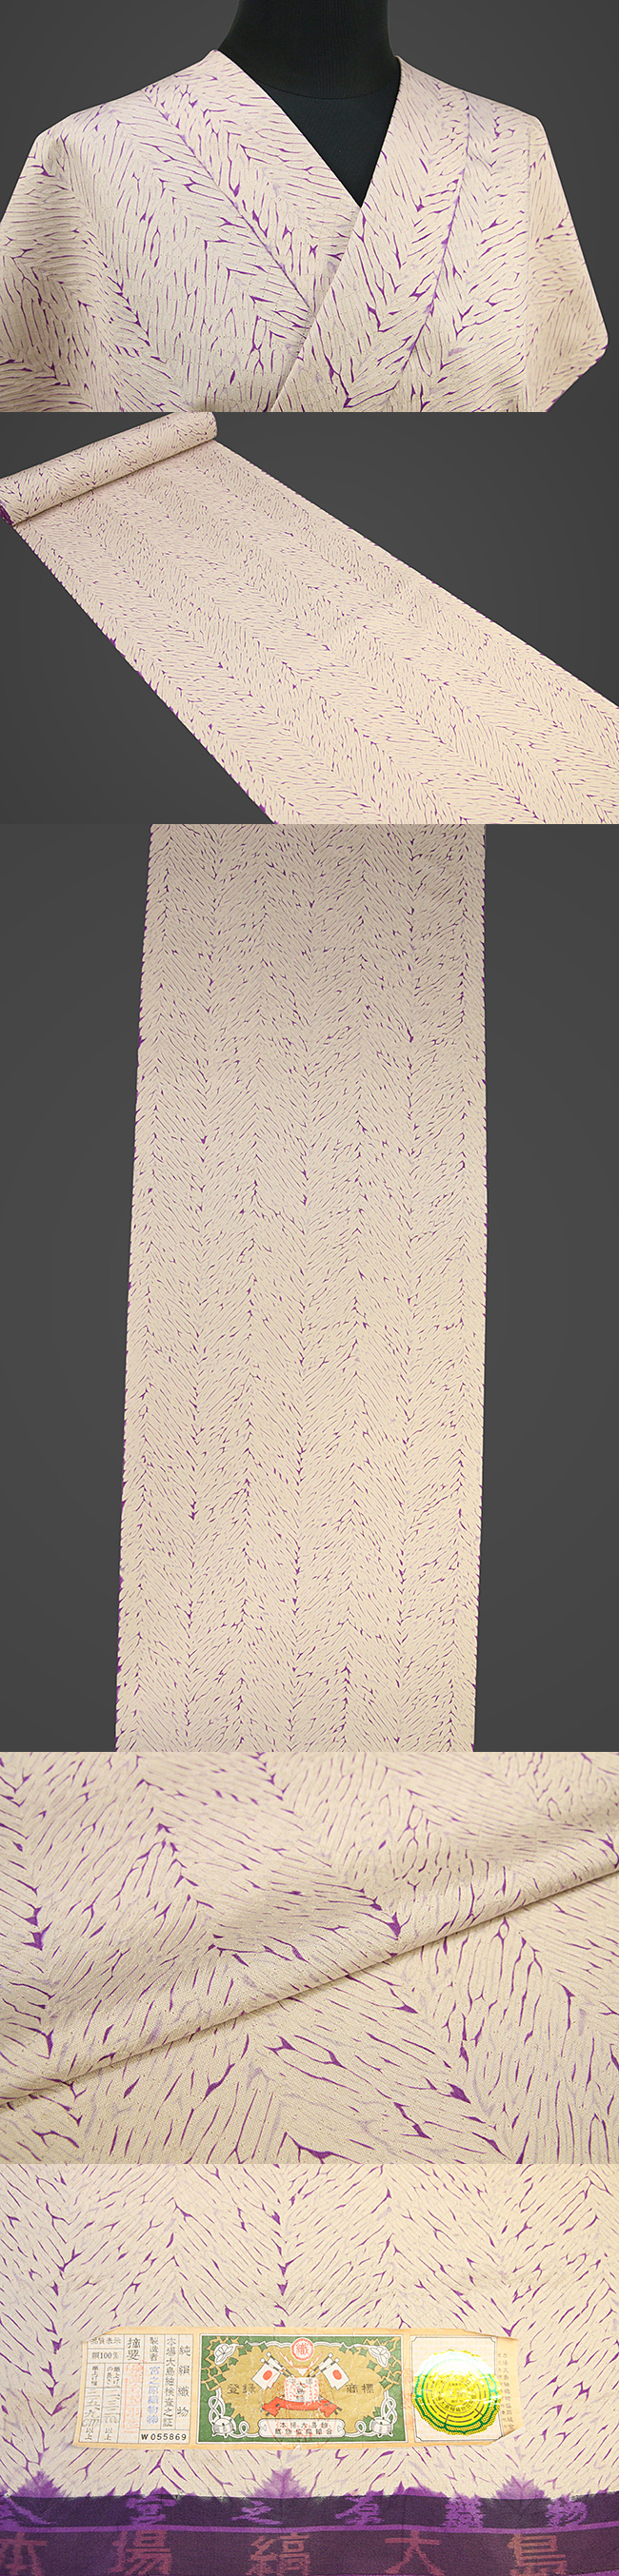 京都 藤井絞 正絹着尺 反物価格 大島紬 縫い〆桧垣 白×紫